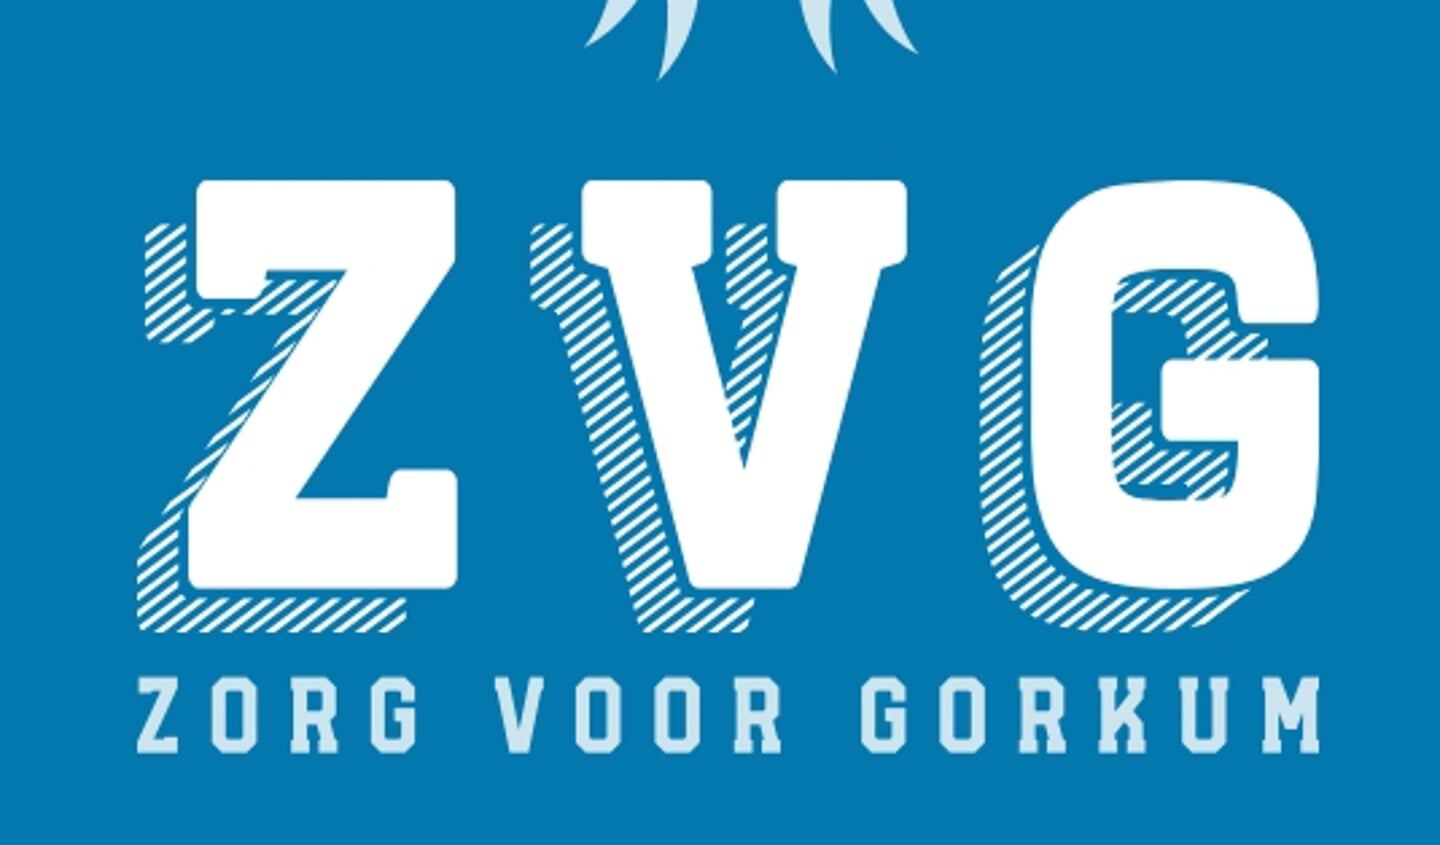 Het logo van de nieuwe partij